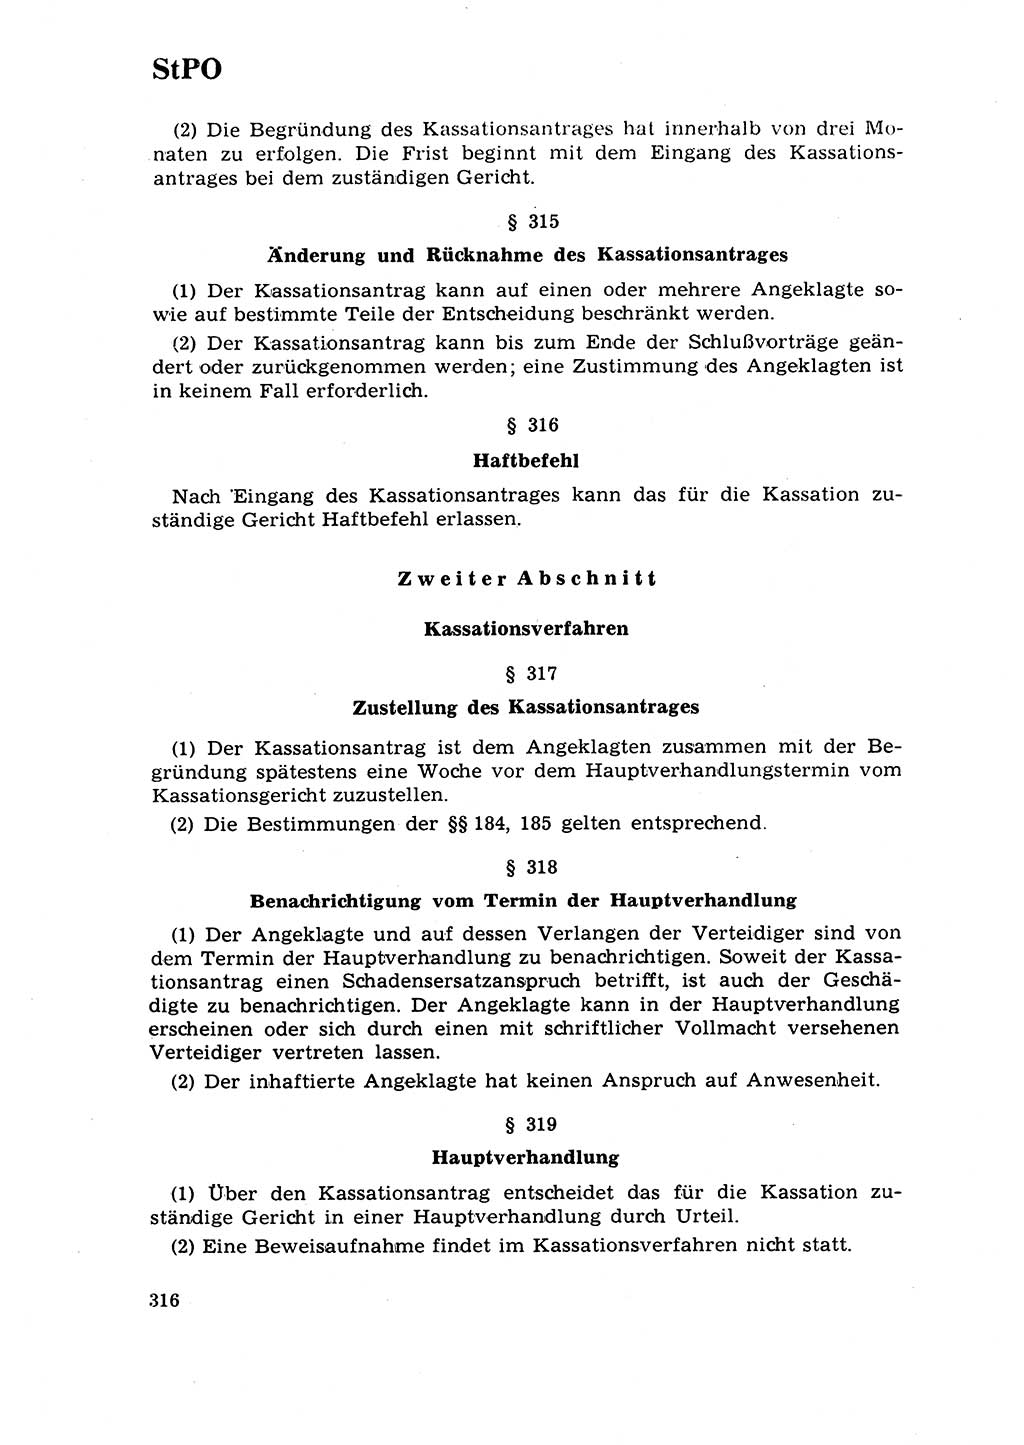 Strafrecht [Deutsche Demokratische Republik (DDR)] 1968, Seite 316 (Strafr. DDR 1968, S. 316)